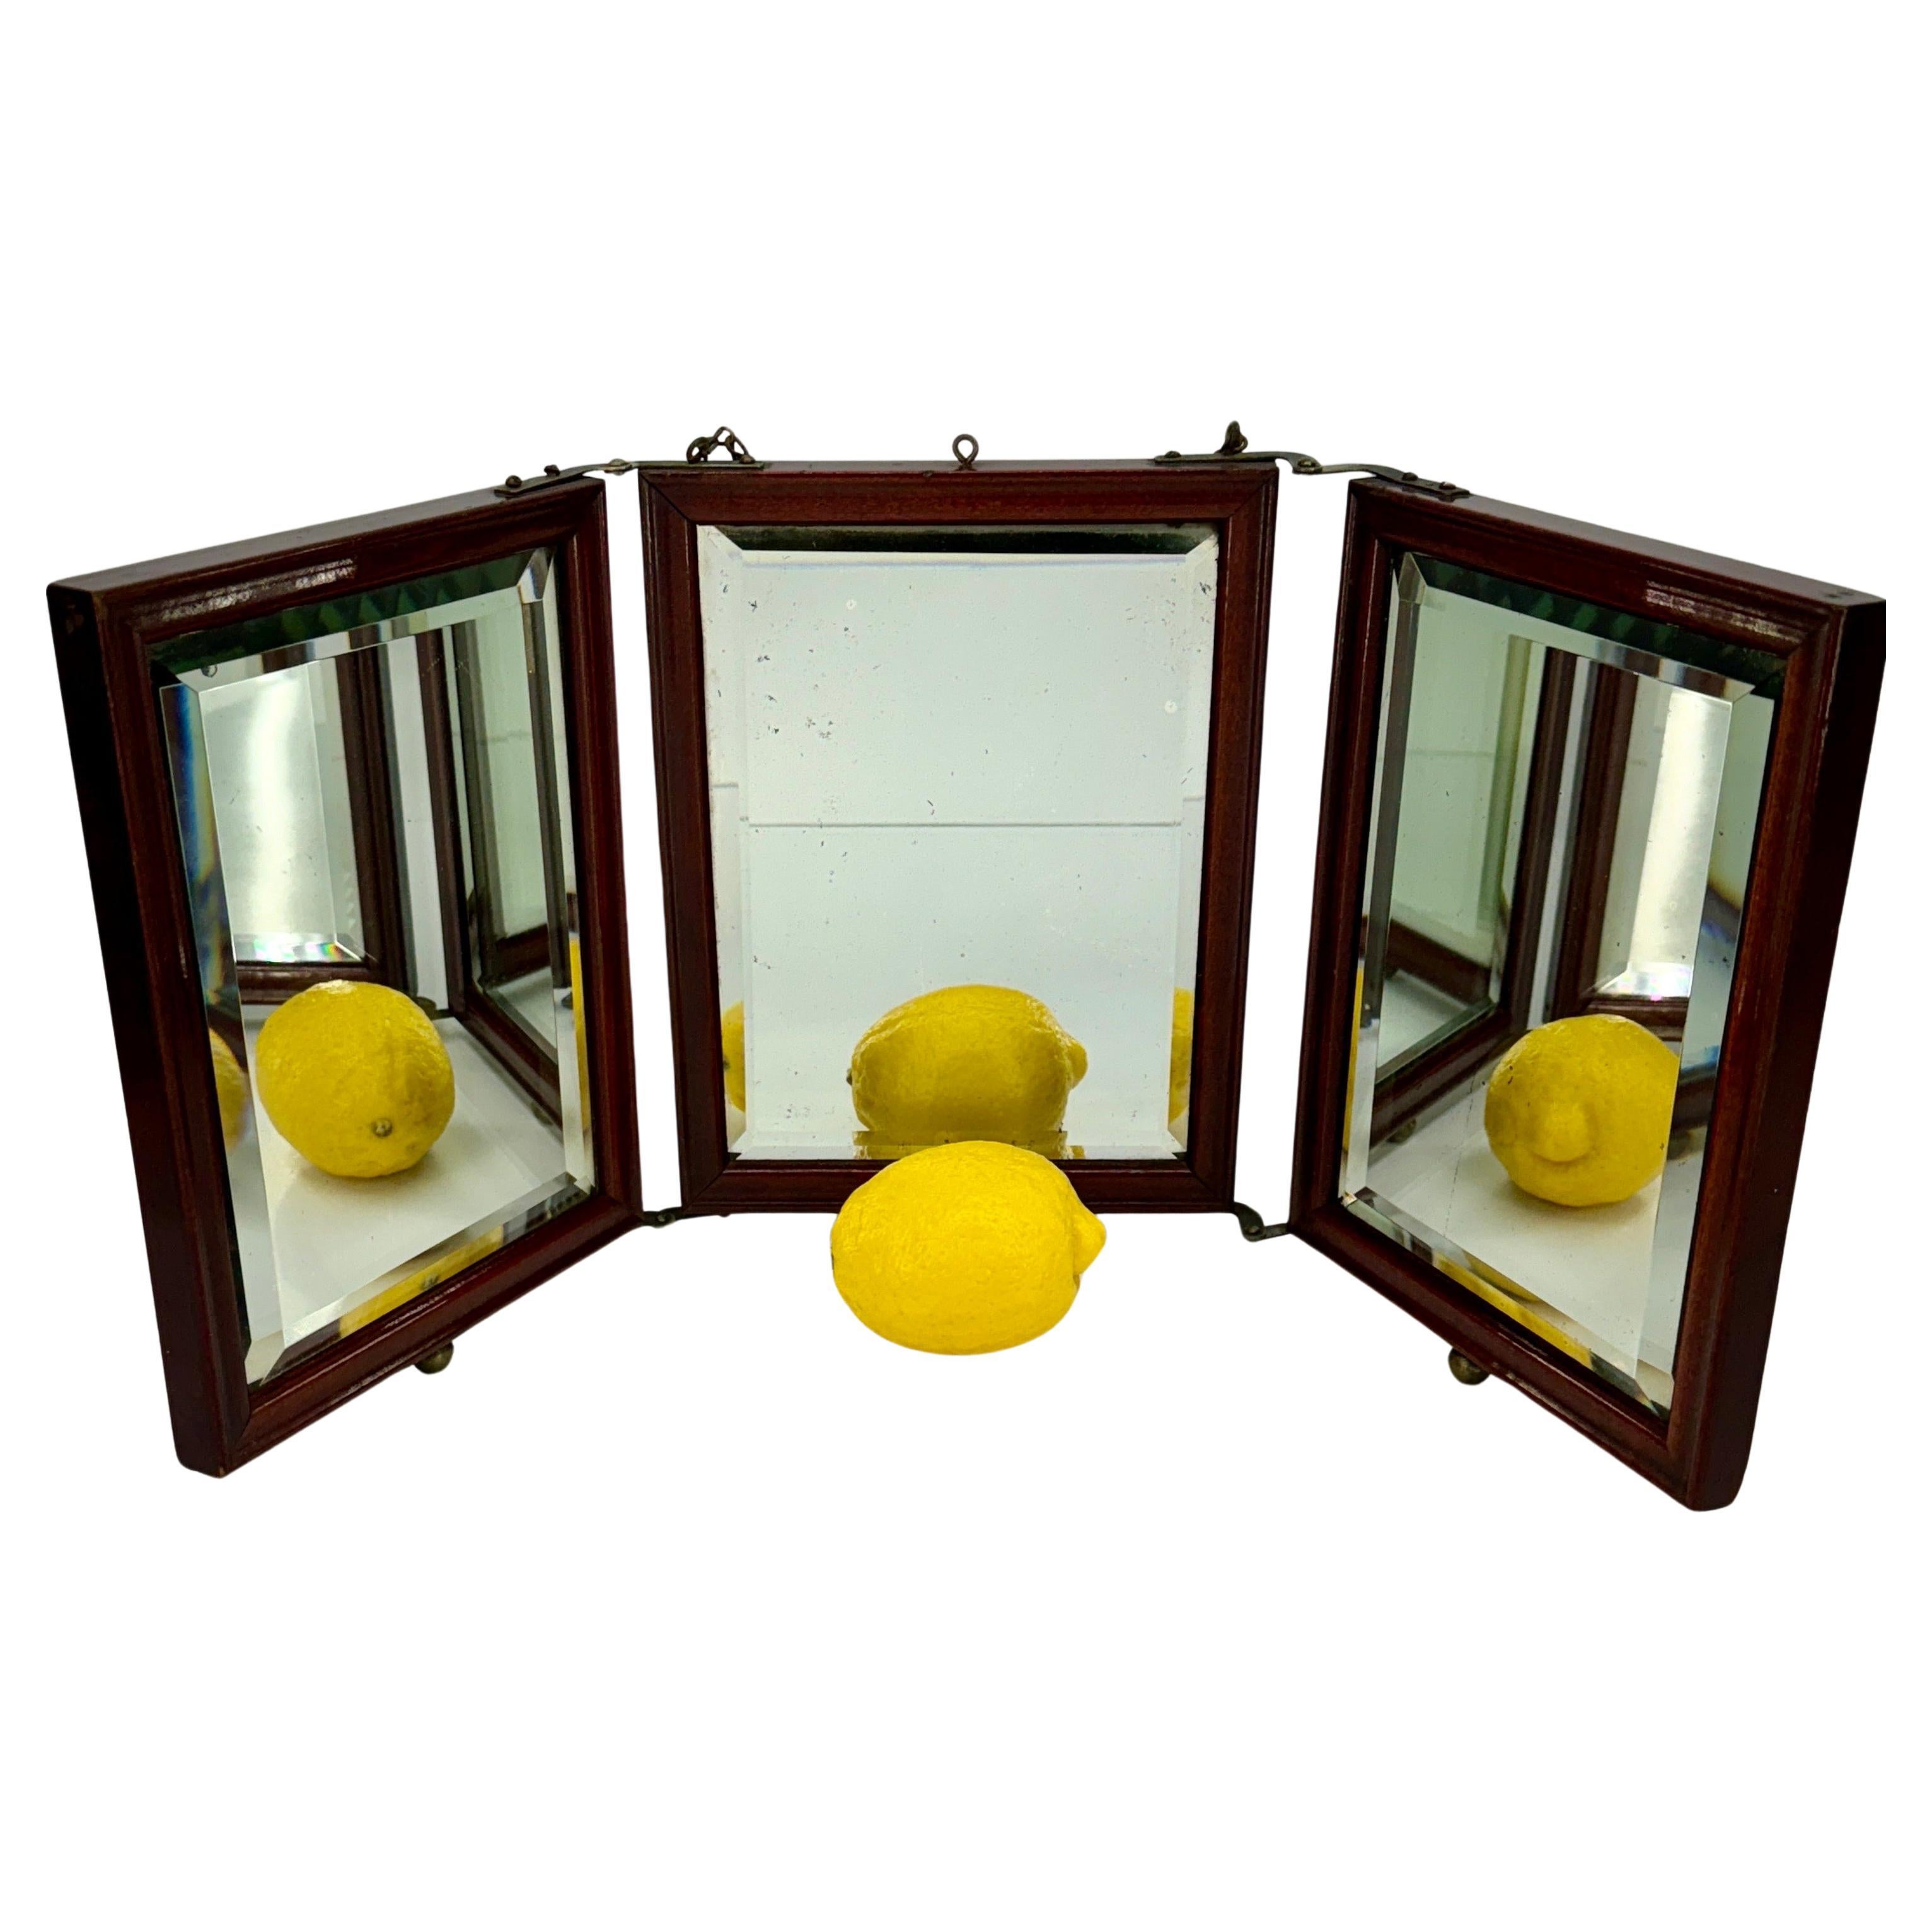 Dreifach gefalteter Reise- oder Ankleidespiegel mit abgeschrägtem Glas. 
Der Spiegel kann frei stehen oder so an die Wand gehängt werden, dass die beiden seitlichen Spiegelflächen beweglich bleiben. 